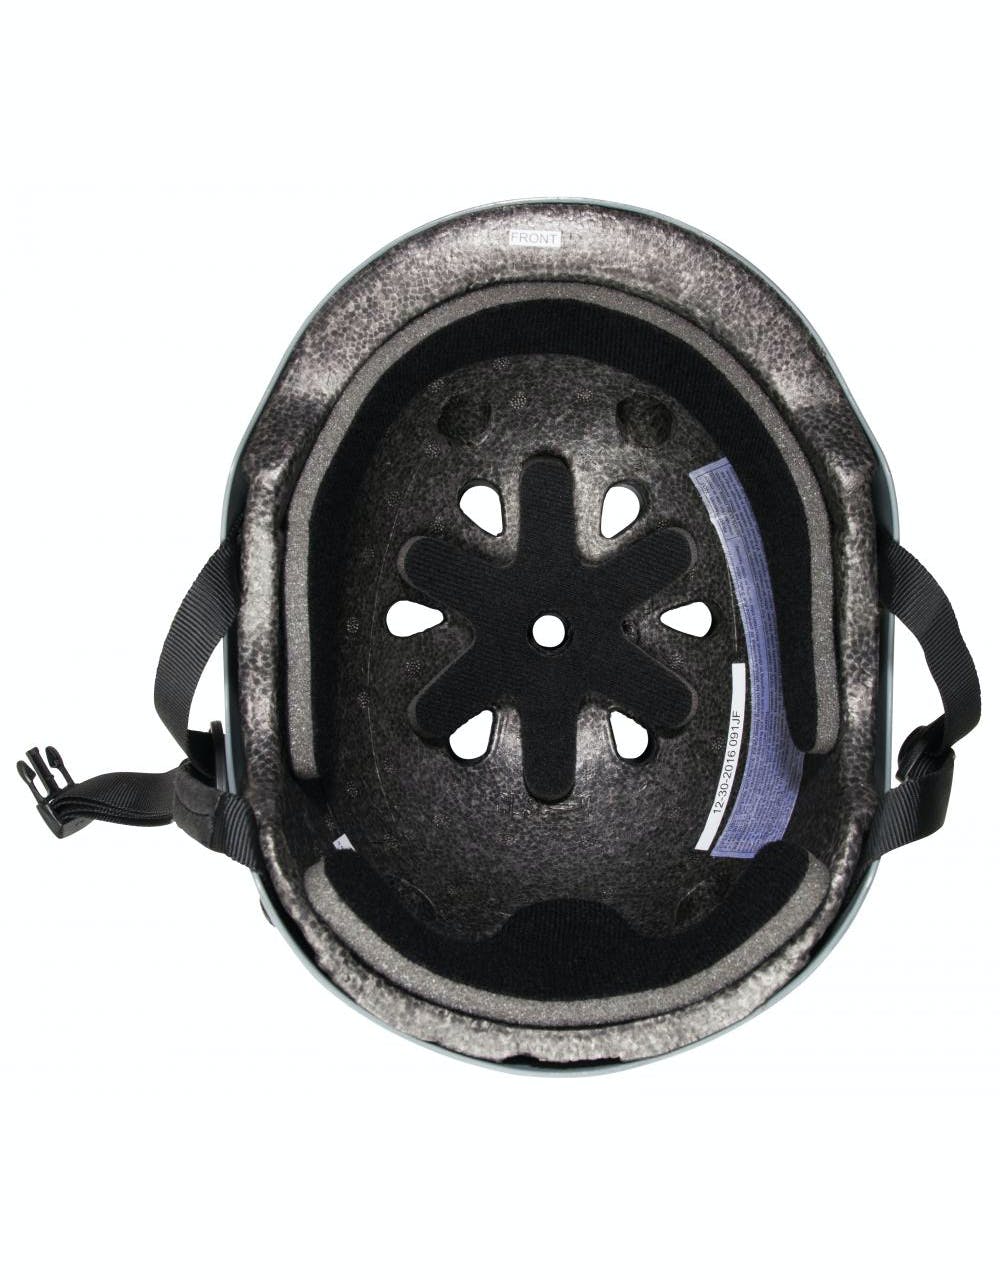 Pro-Tec Classic Helmet - Matte Grey